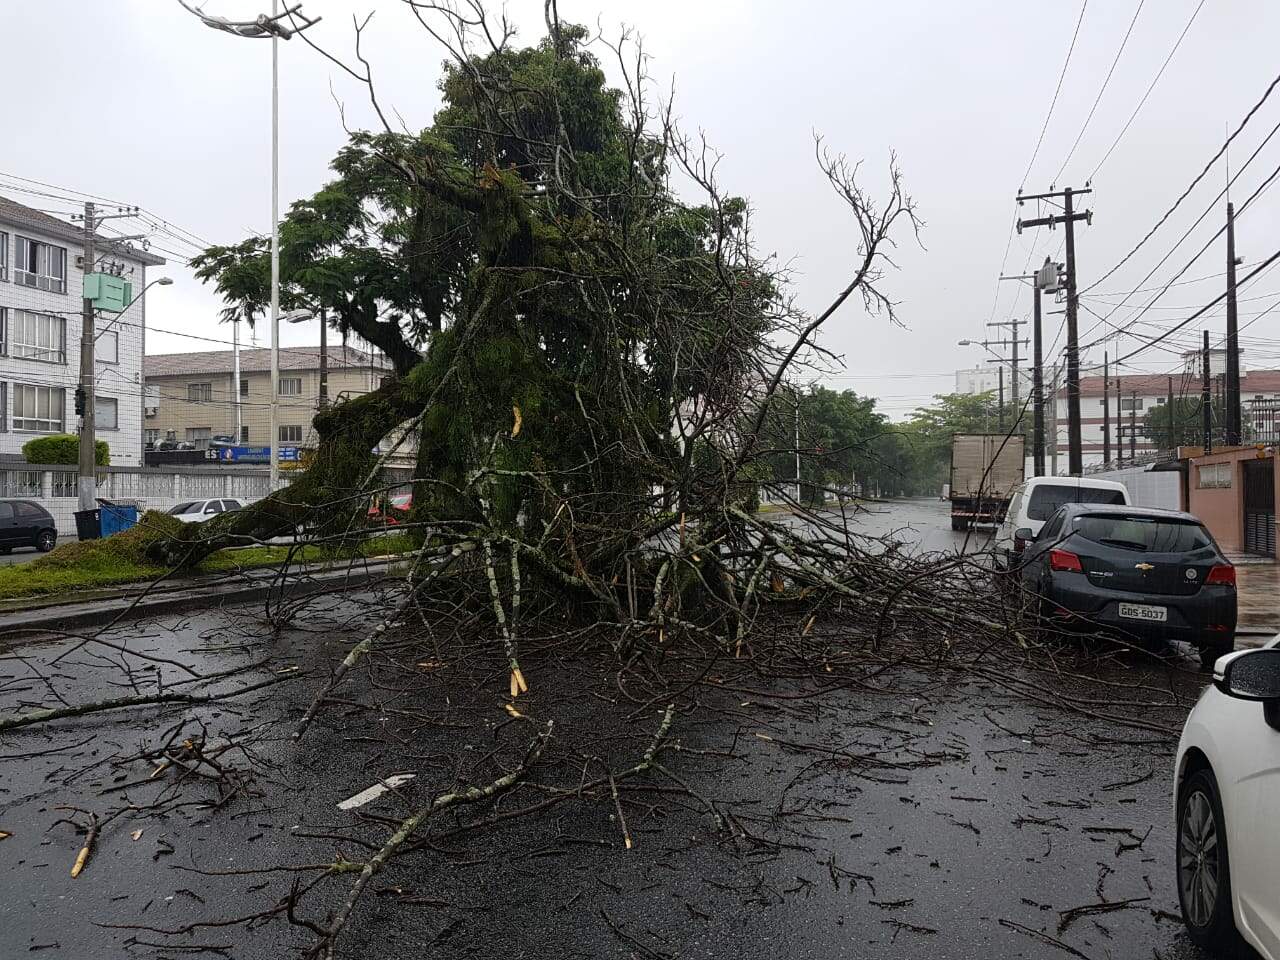 Árvore caída na Avenida Afonso Pena gerou transtornos a moradores